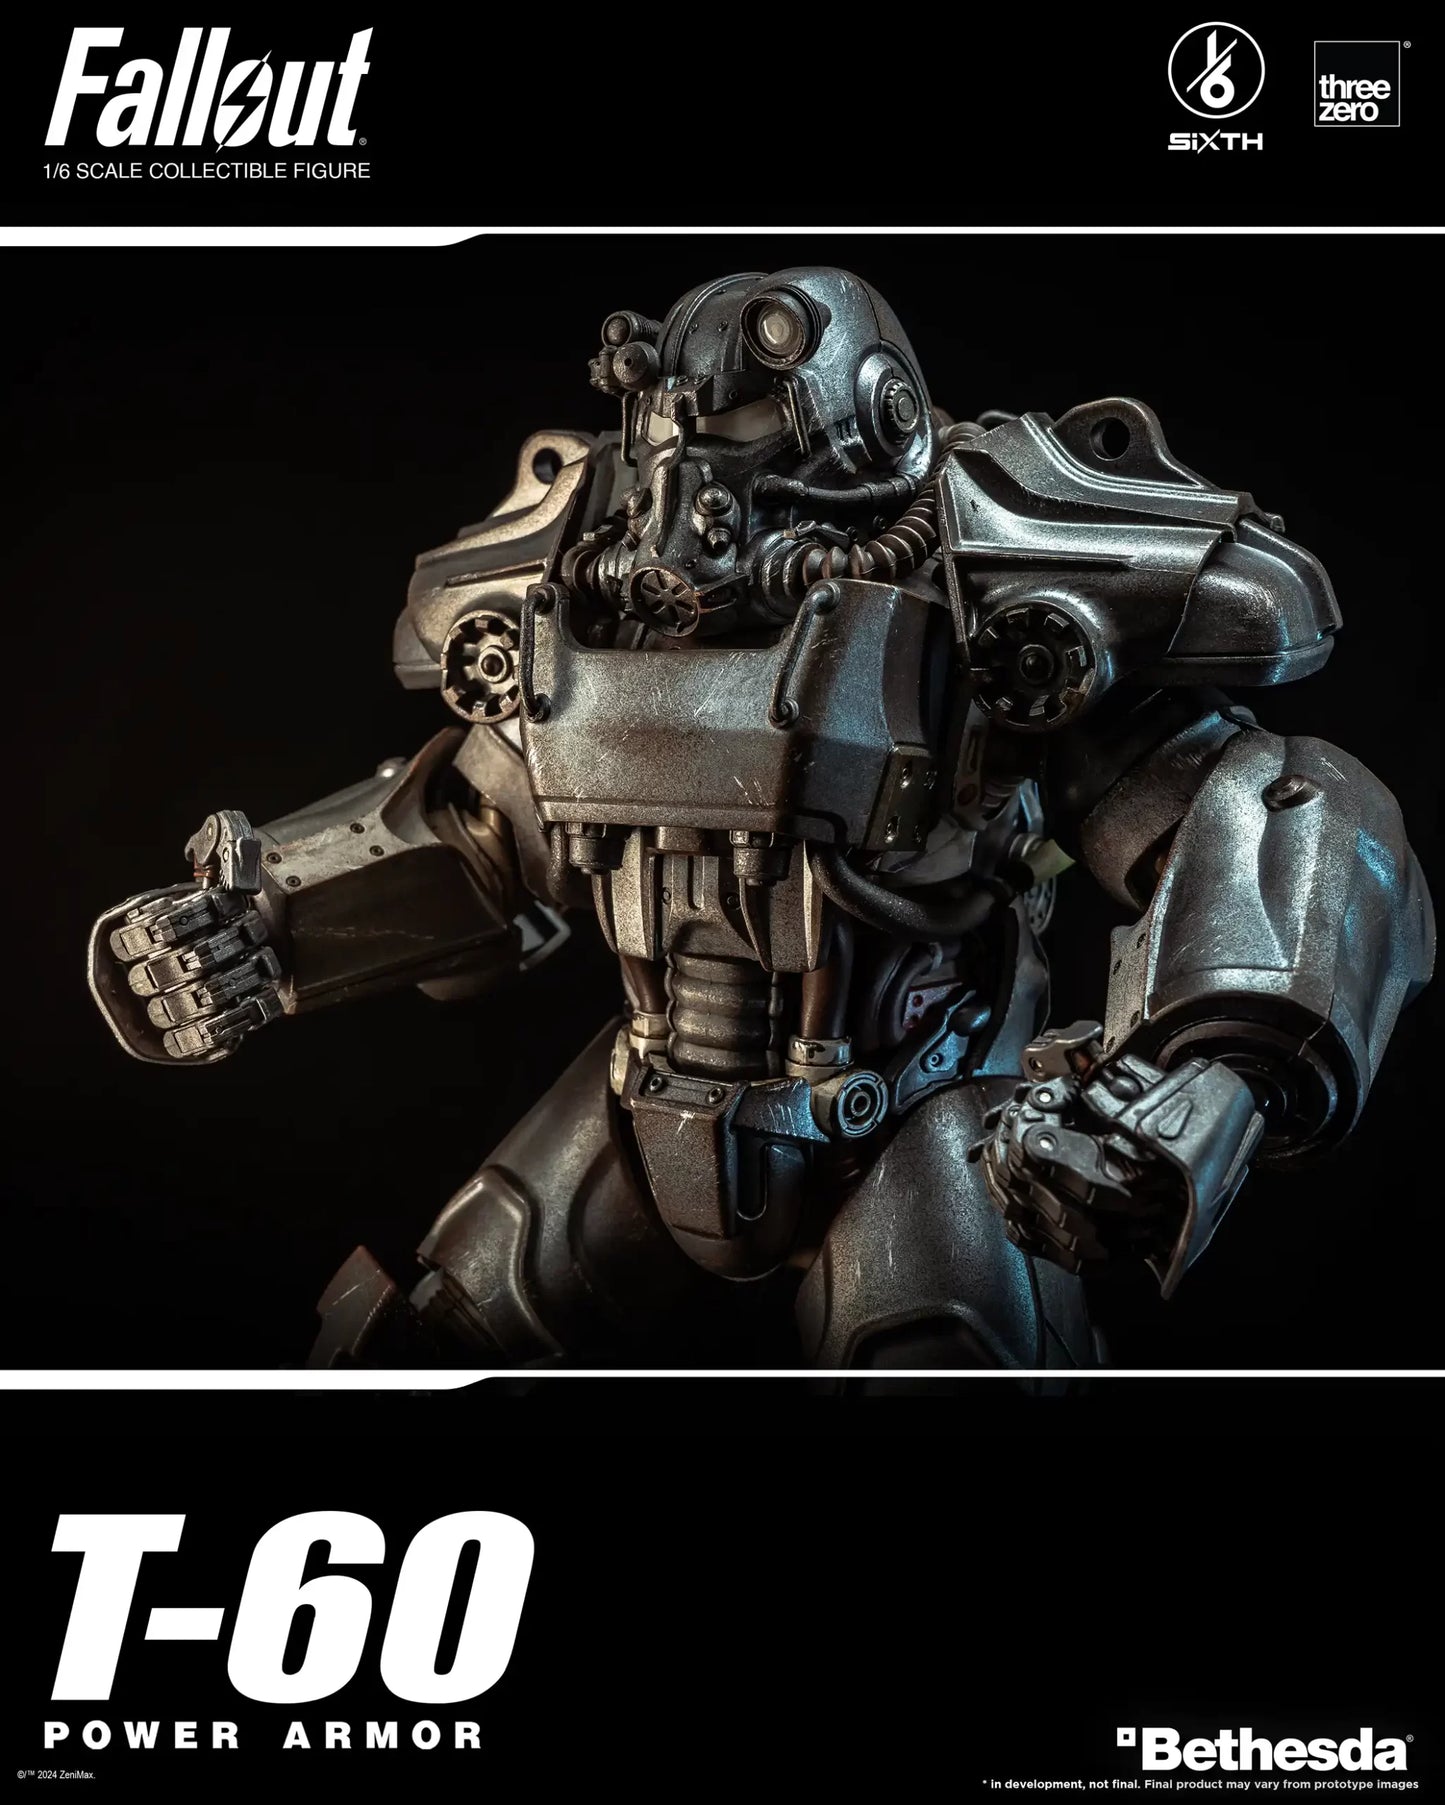 Preventa Figura T-60 Power Armor - FALLOUT marca Threezero 3Z0856 escala 1/6